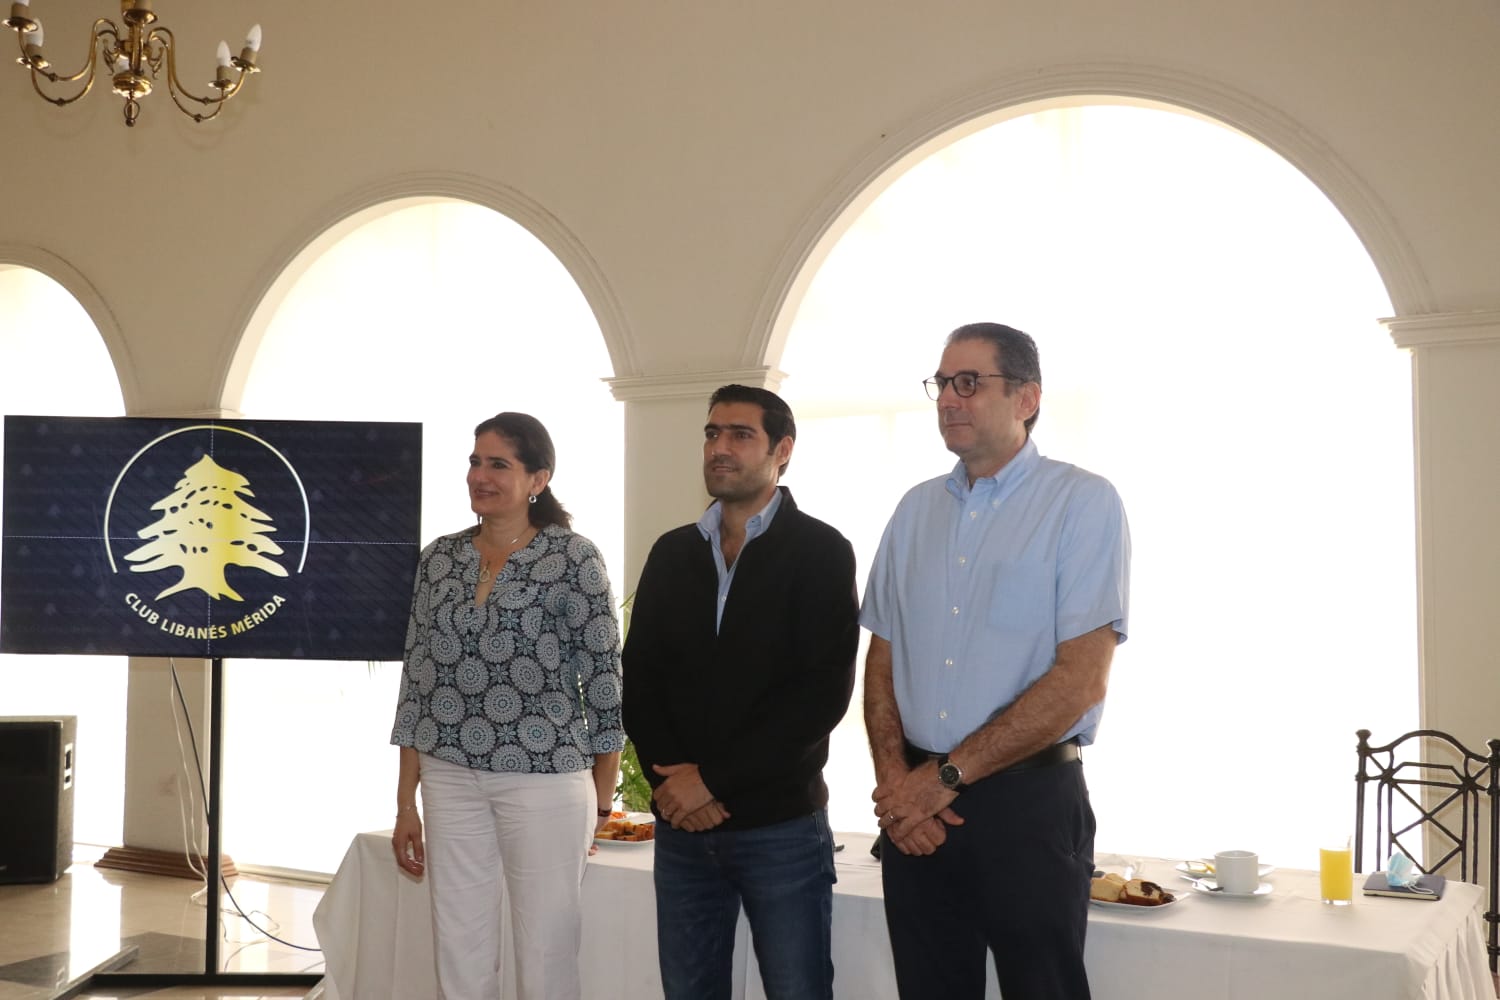 A seguir sumando valores del trabajo y la familia: Club Libanés de Mérida